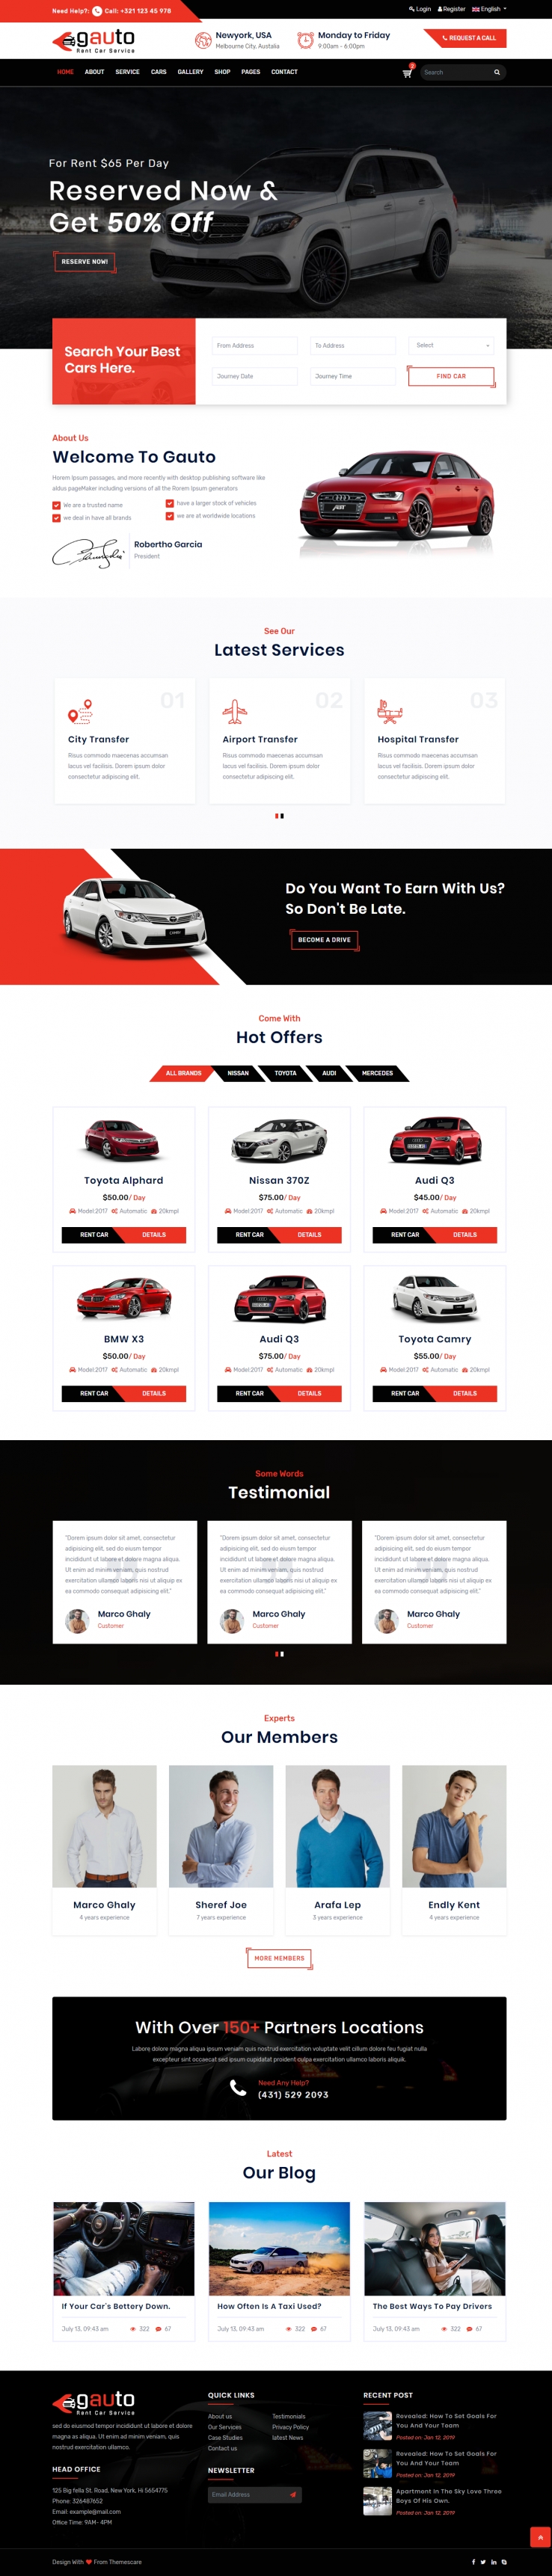 红色欧美风格的汽车租赁平台企业网站源码下载